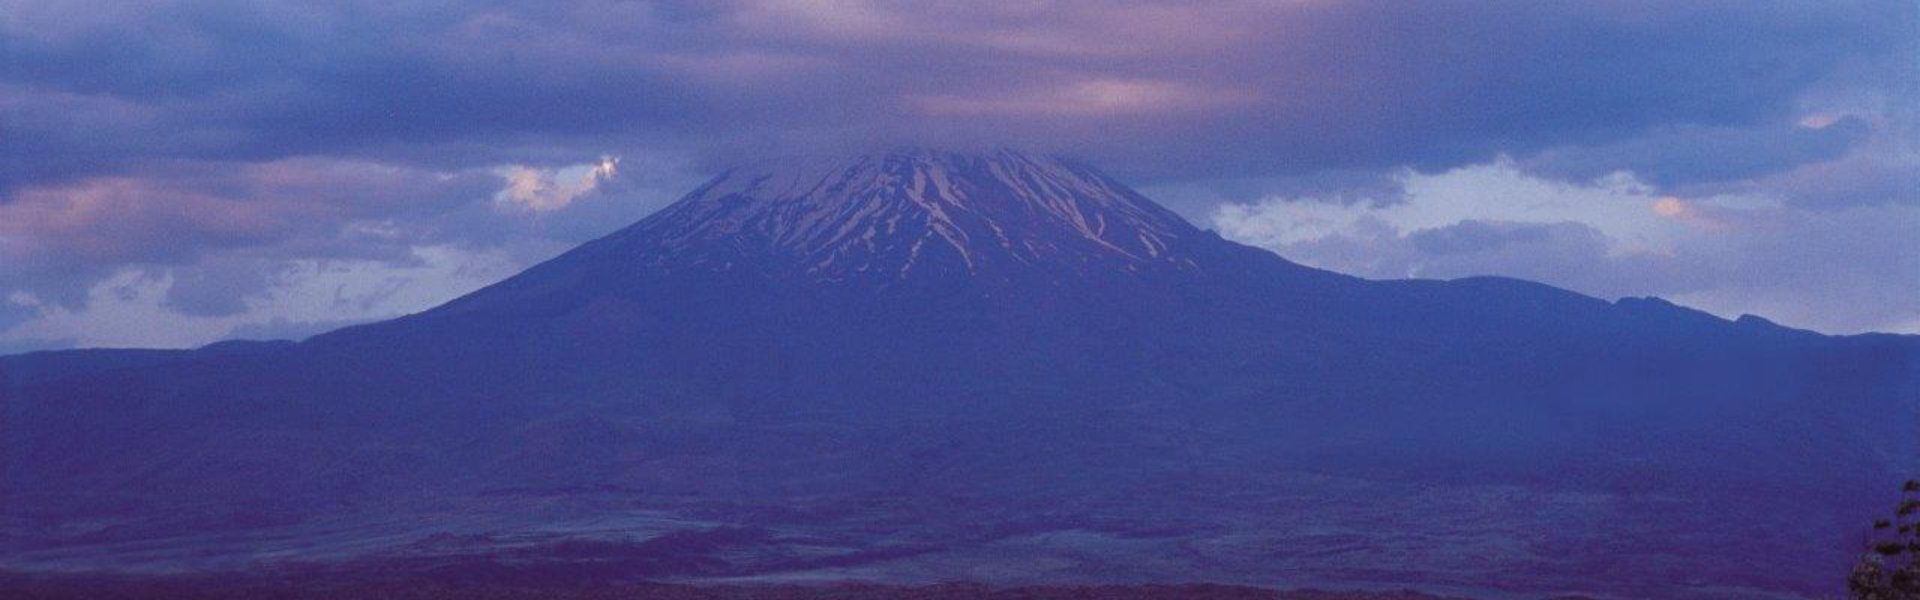 Agri Dagi - Monte Ararat 2-wide